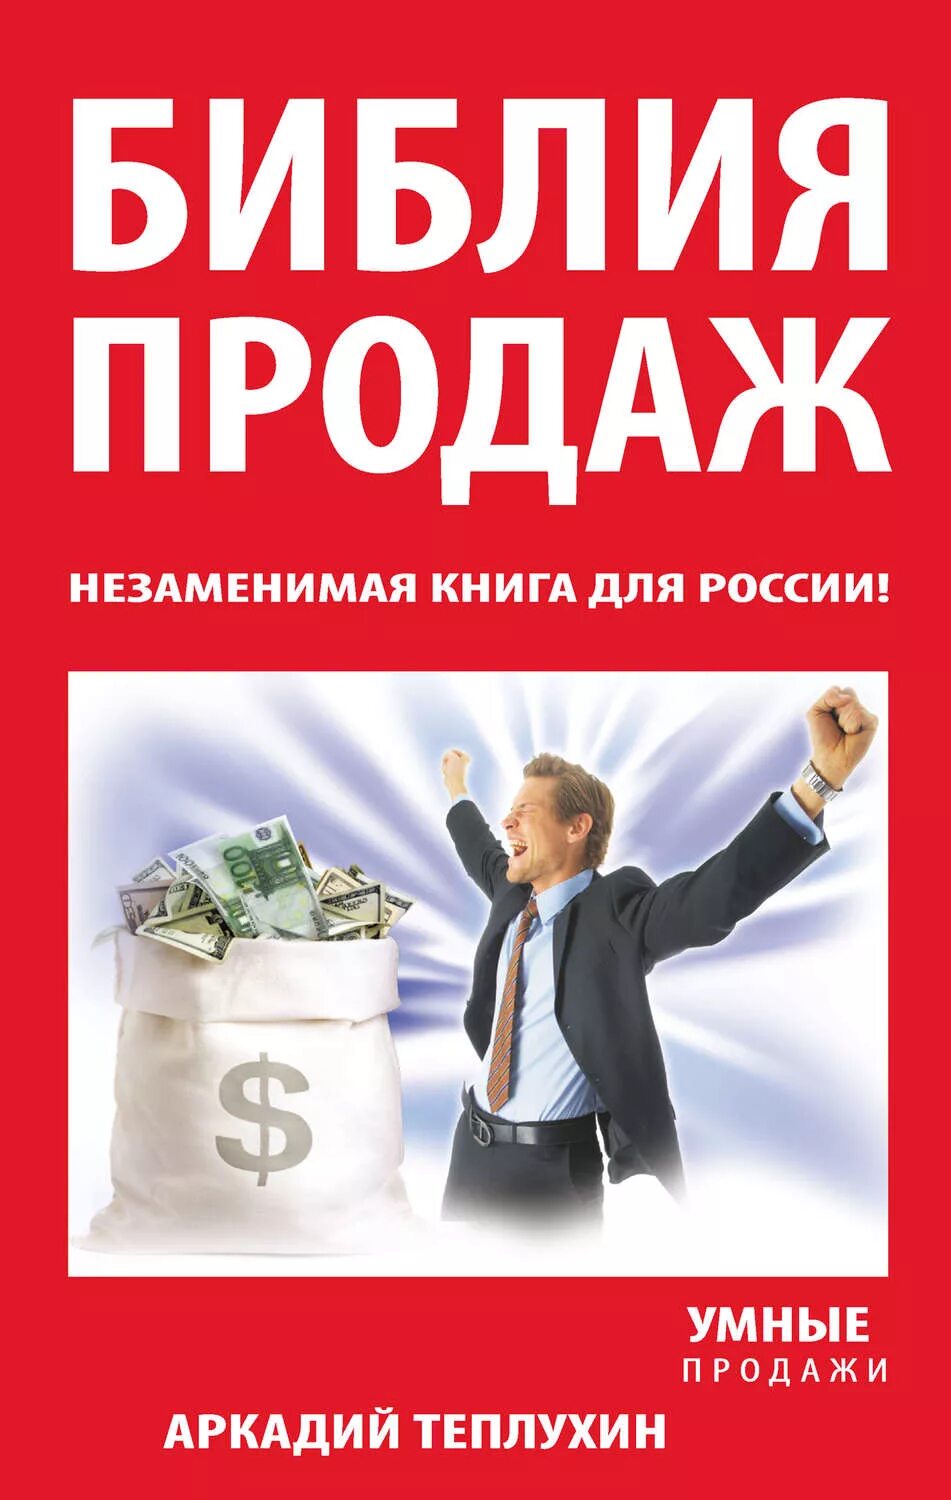 Книга продаж. Библия продаж. Библия продаж незаменимая книга для России. Продать книги автора